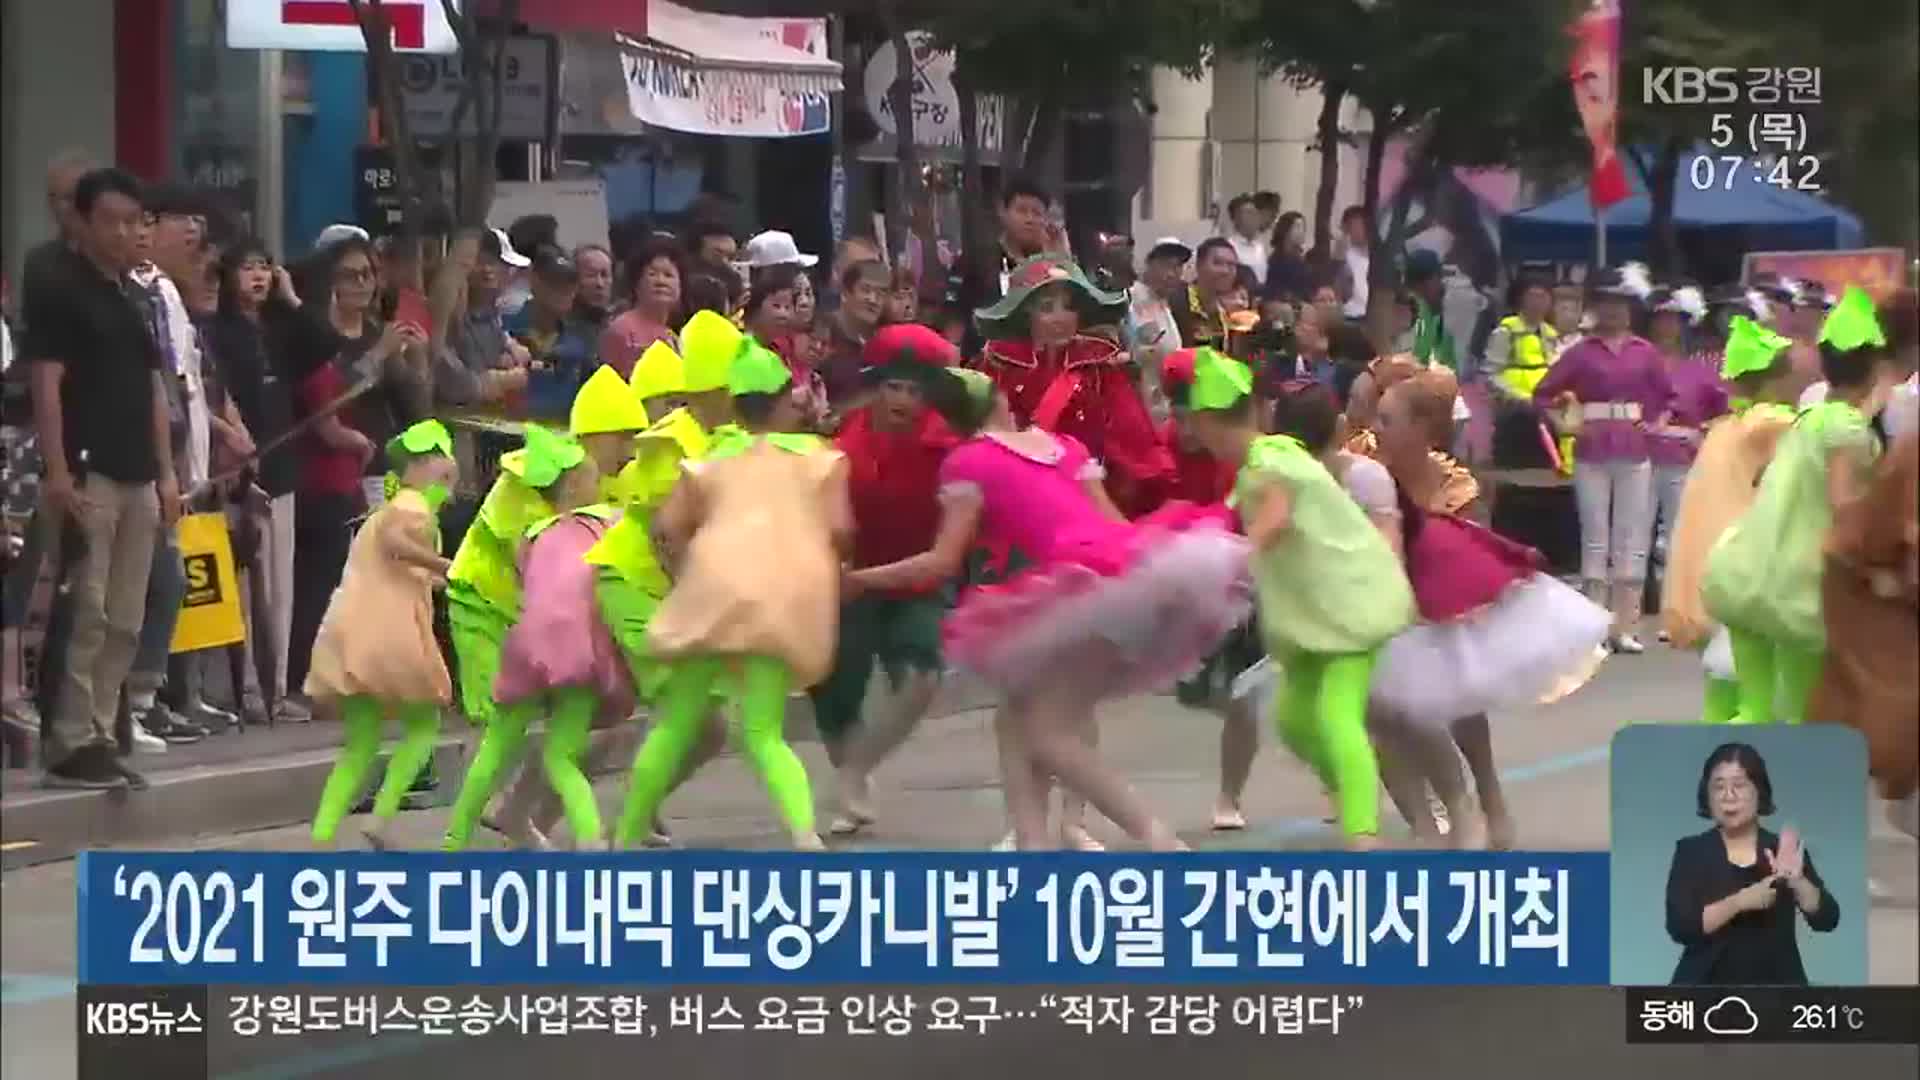 ‘2021 원주 다이내믹 댄싱카니발’ 10월 간현에서 개최